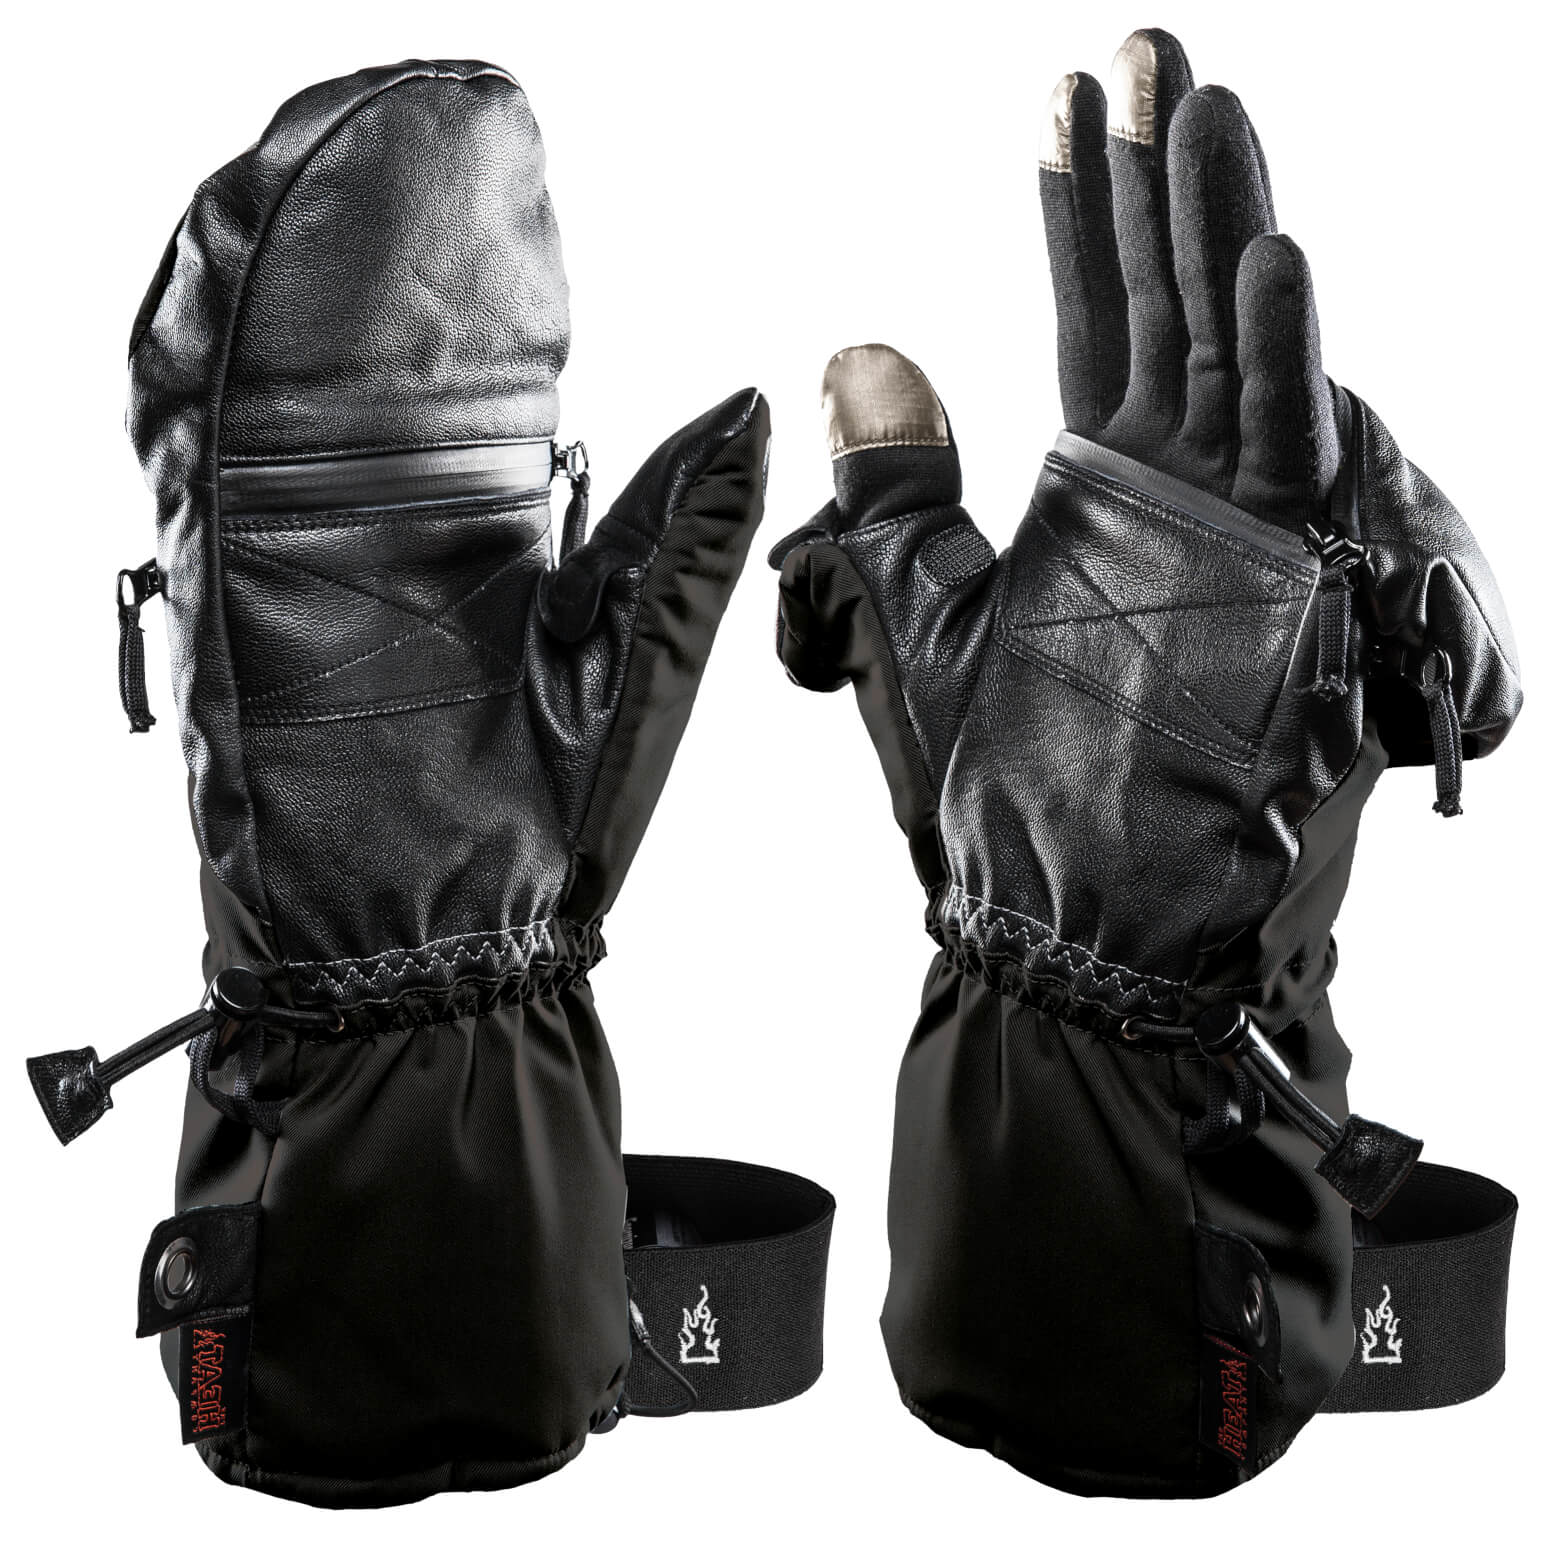 esquí. THE HEAT COMPANY Heat 3 Smart Ideal para manipular manoplas simplemente dobladas No.1 Guantes fotográficos Guantes de dedos y manoplas en uno Los guantes innovadores